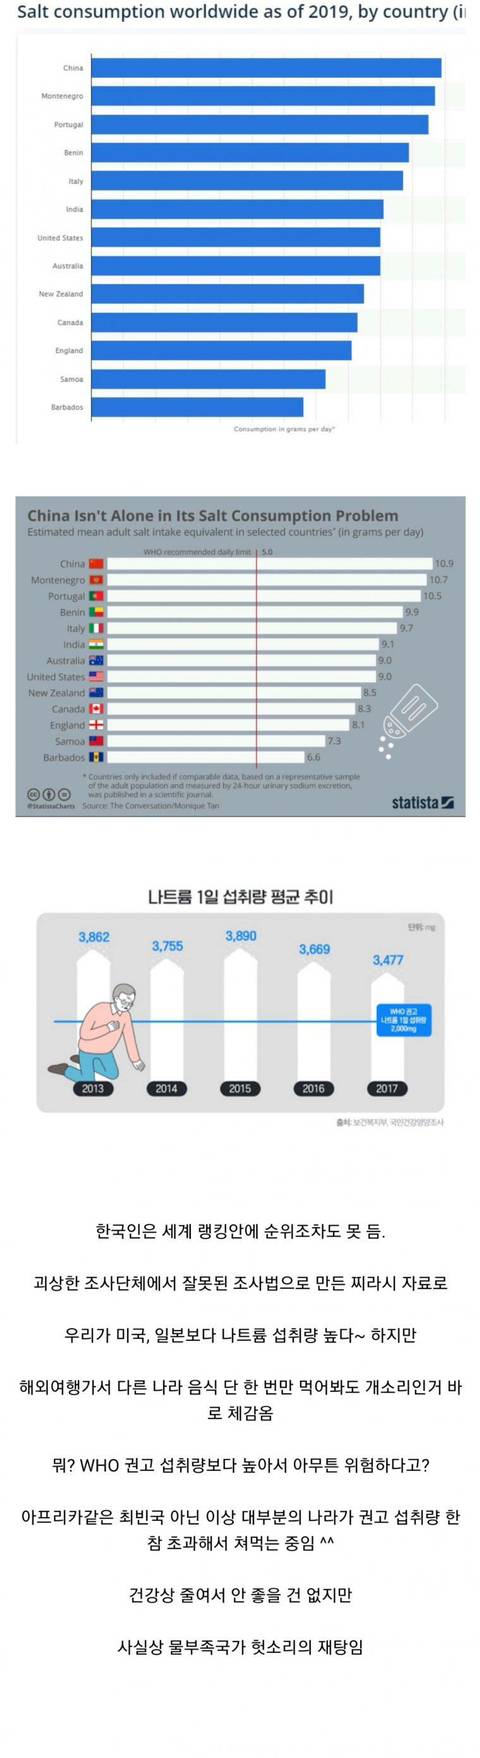 nokbeon.net-한국인이 짜게 먹는다?-1번 이미지